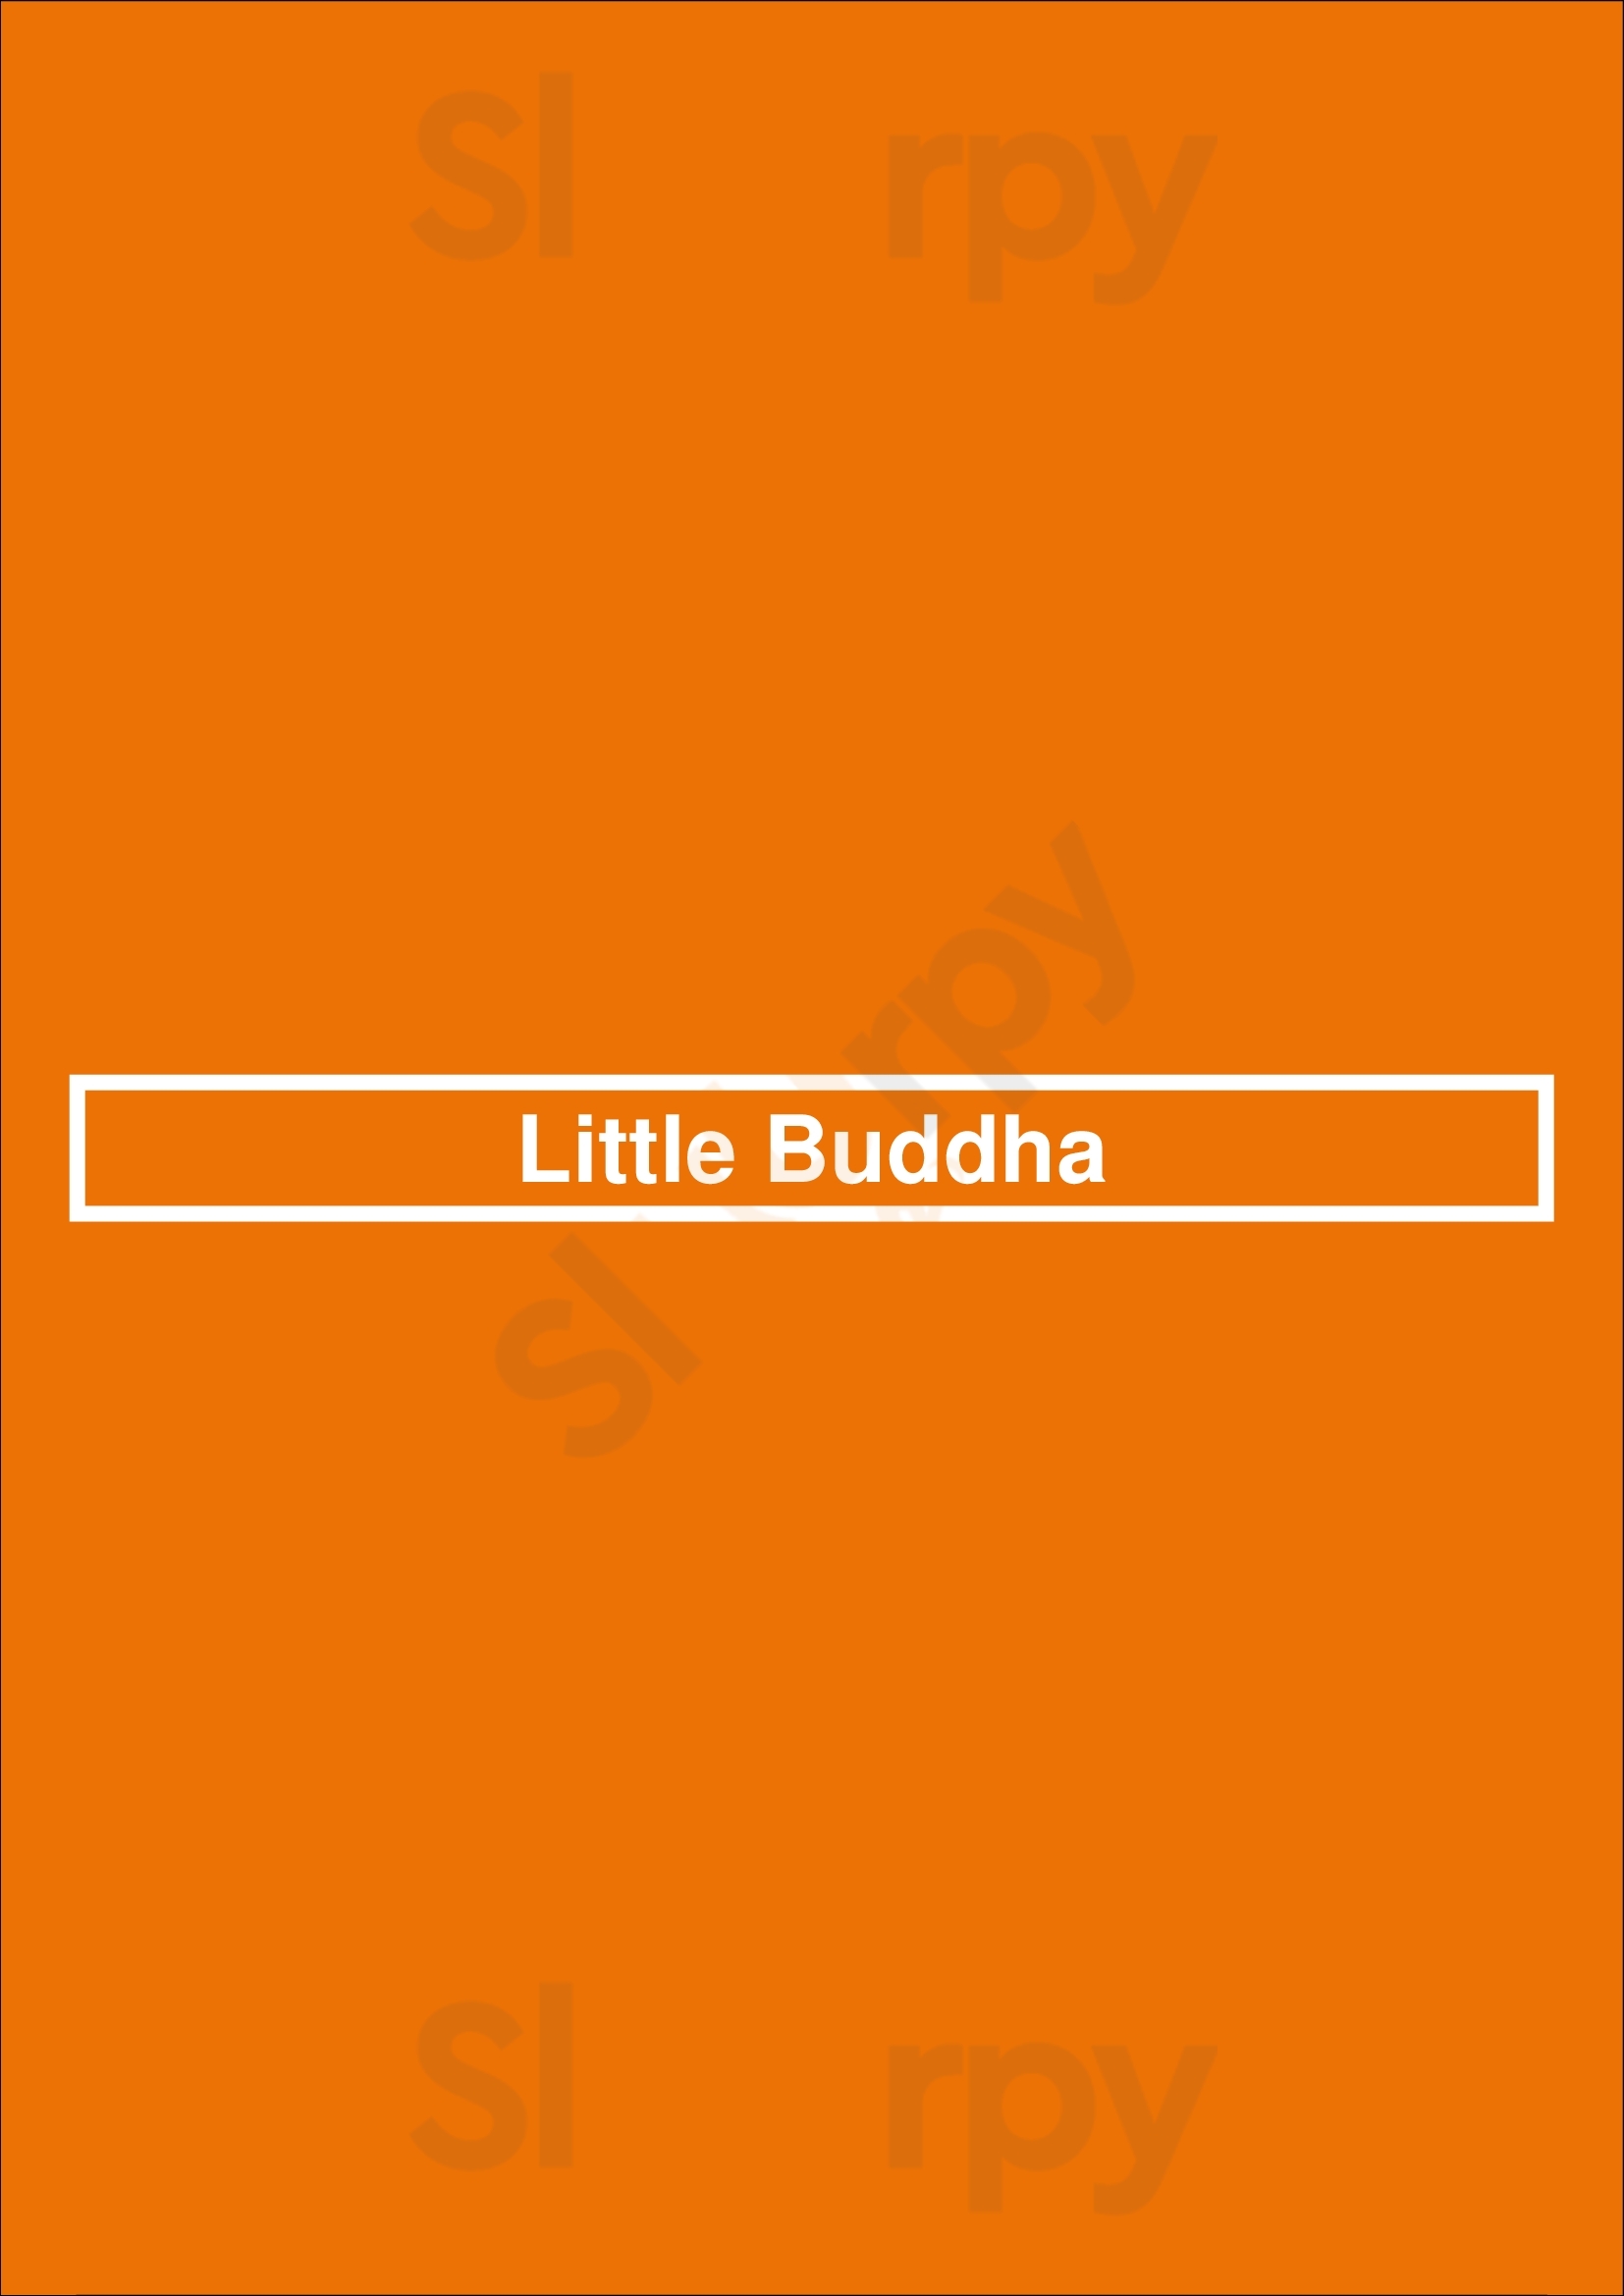 Little Buddha Glasgow Menu - 1